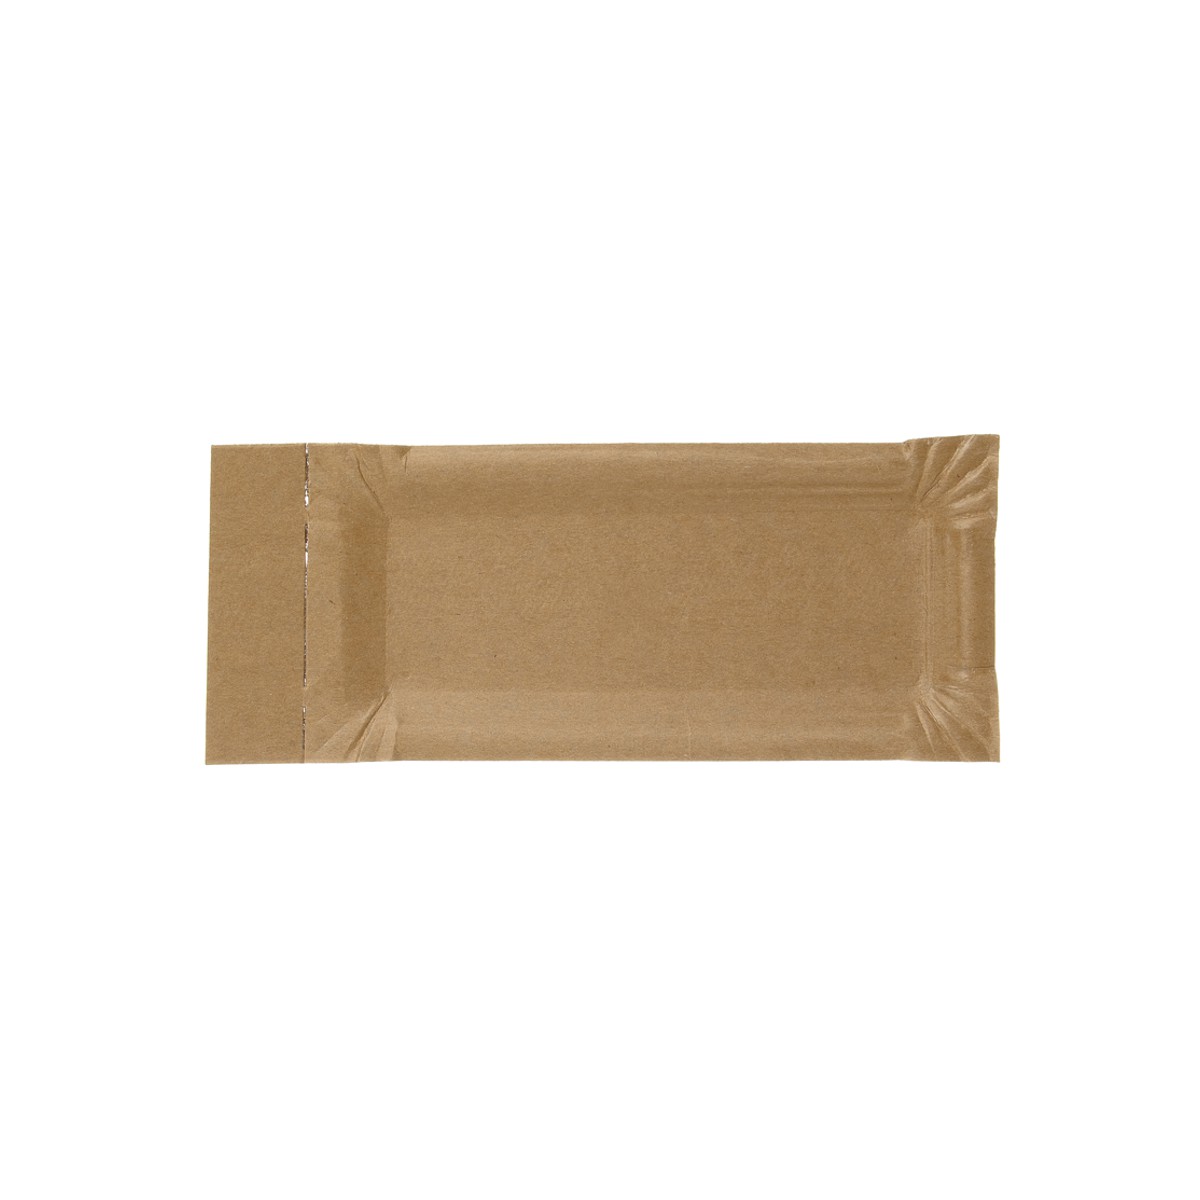 Pappteller mit Abriss 8x18+3 cm Braun Bio